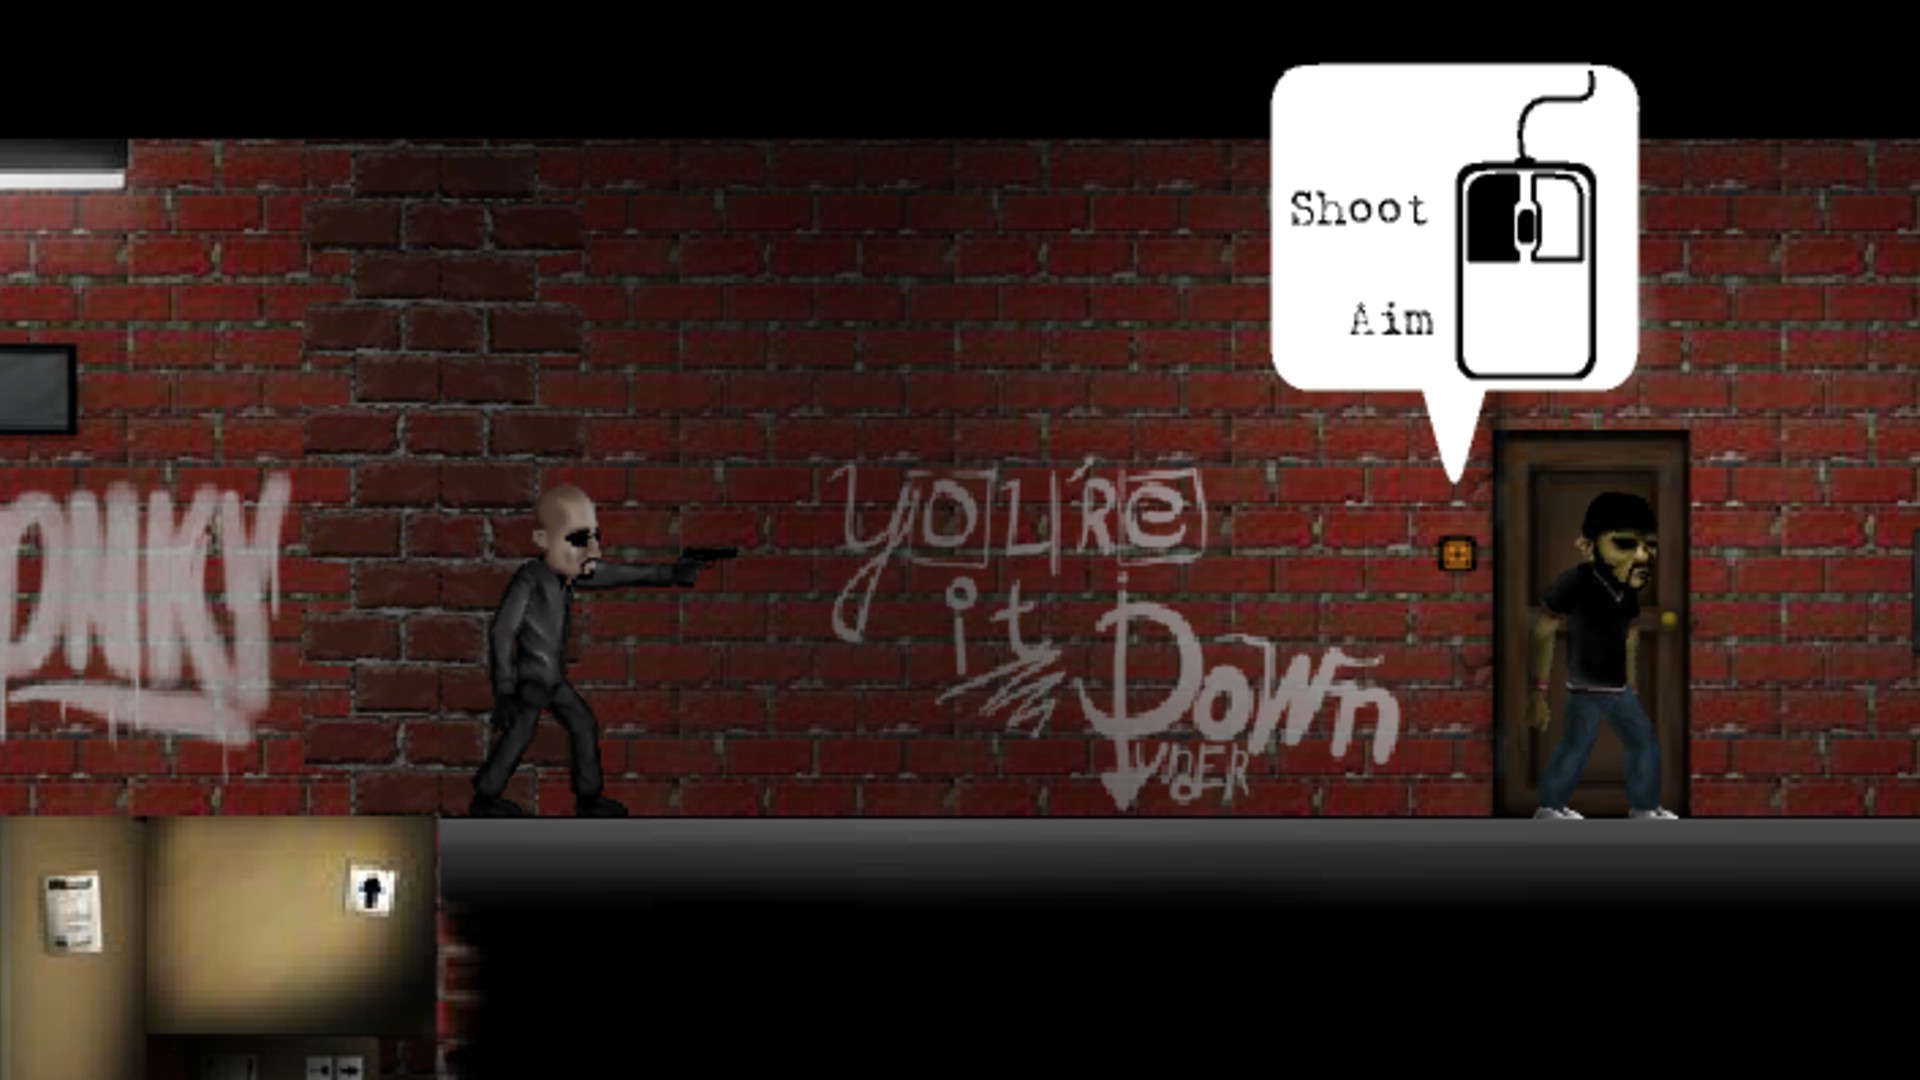 Online játékok: Pedro barátom. A kép azt mutatja, hogy egy karakter felkészül arra, hogy valakit az utcán lőjön